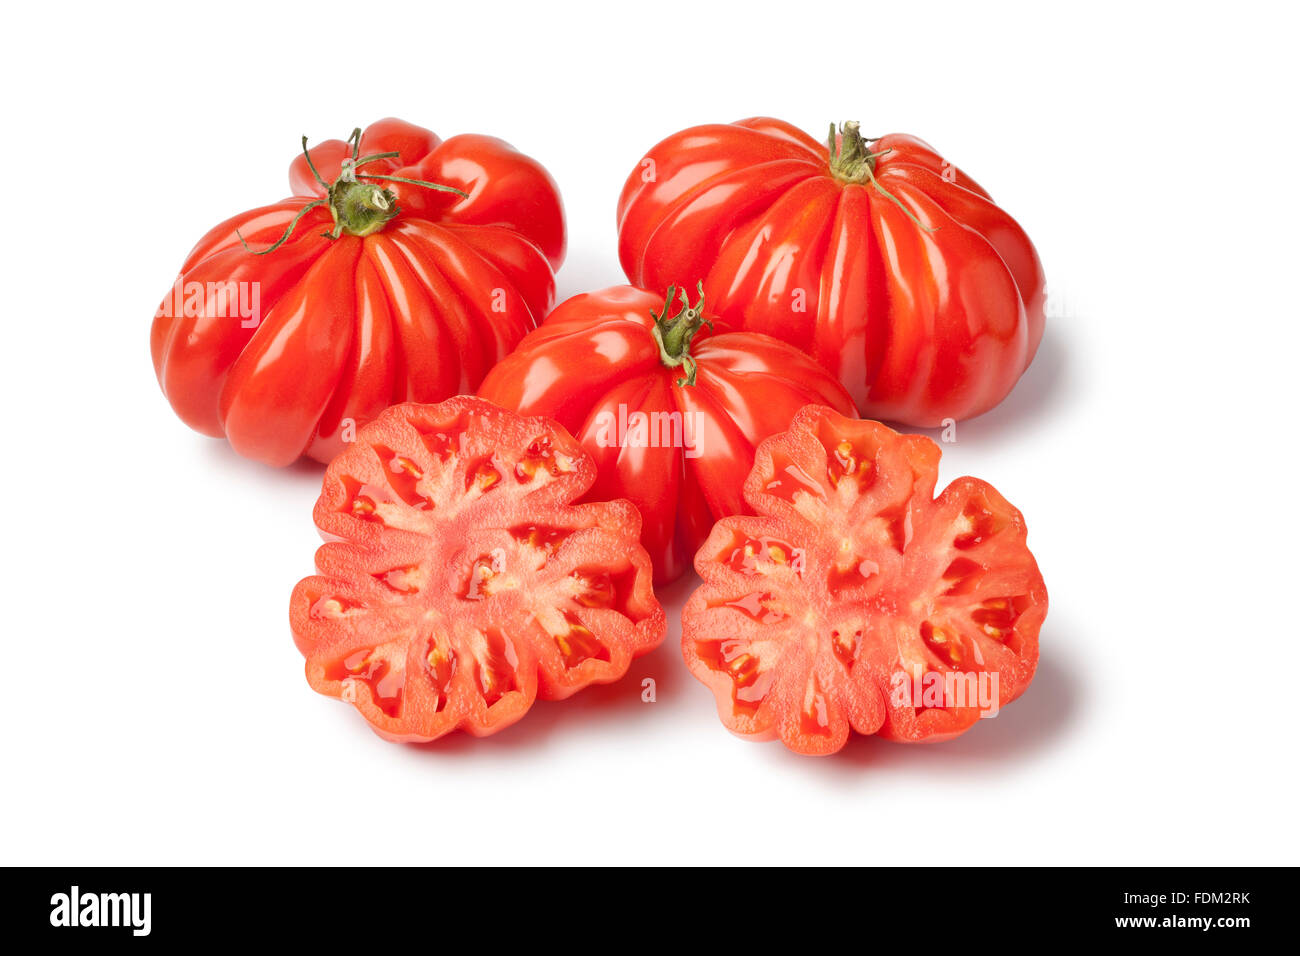 Poisson frais entier et la moitié des tomates La rébellion biologique sur fond blanc Banque D'Images